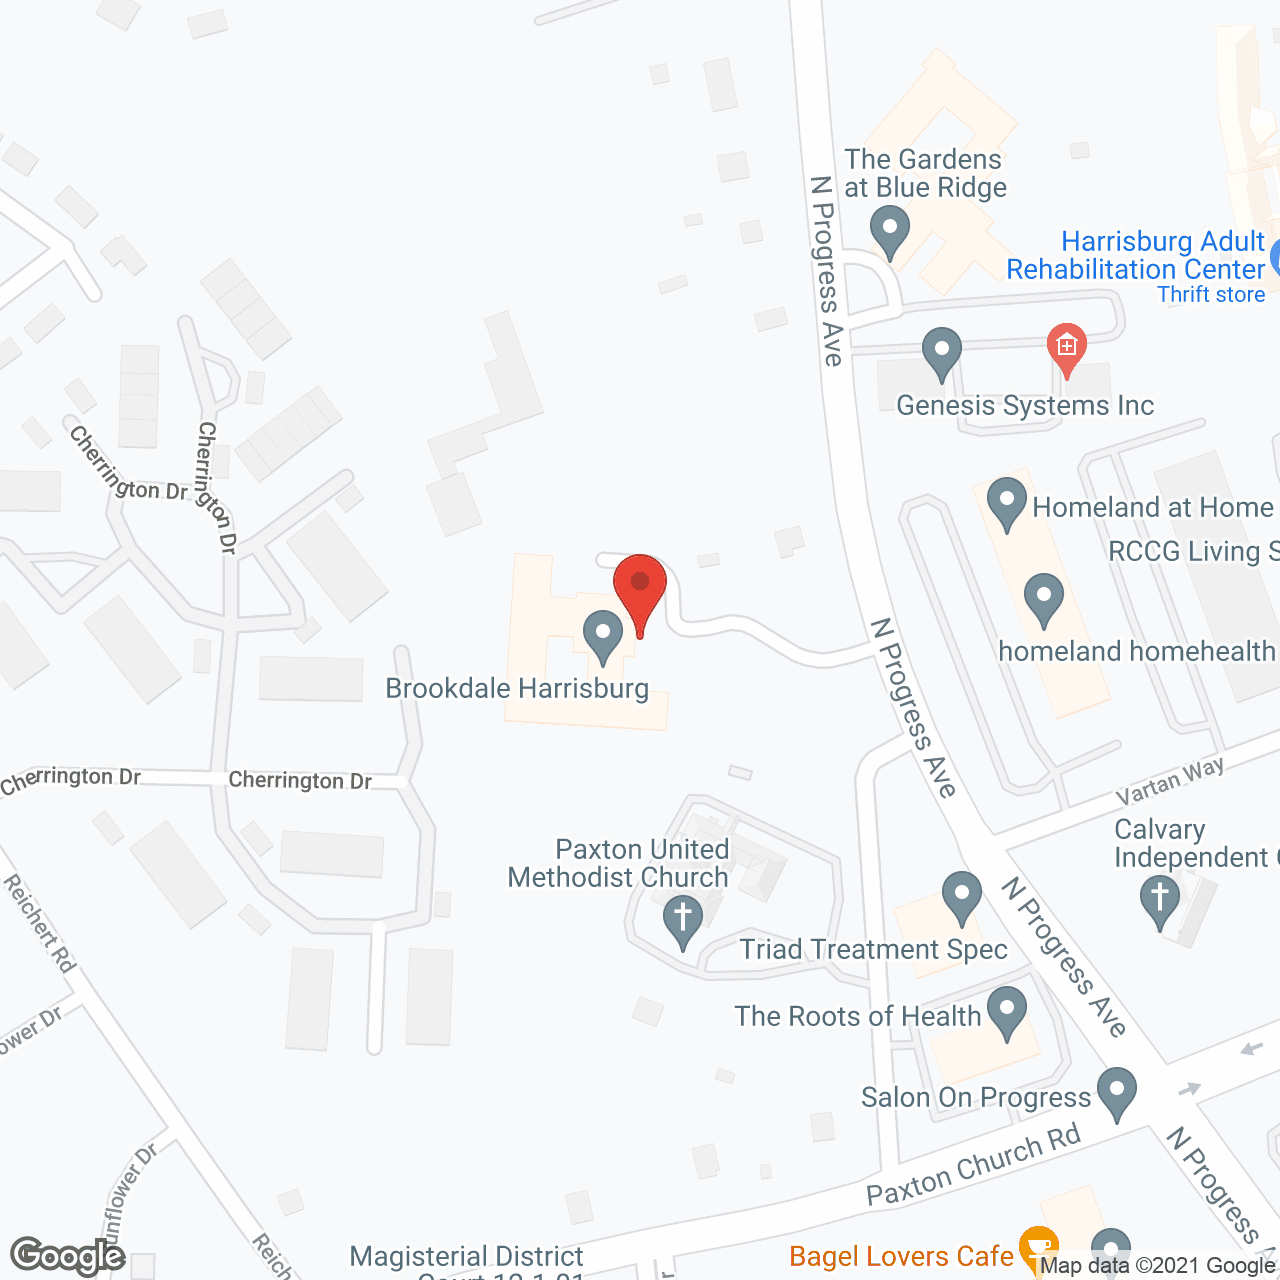 Brookdale Harrisburg in google map